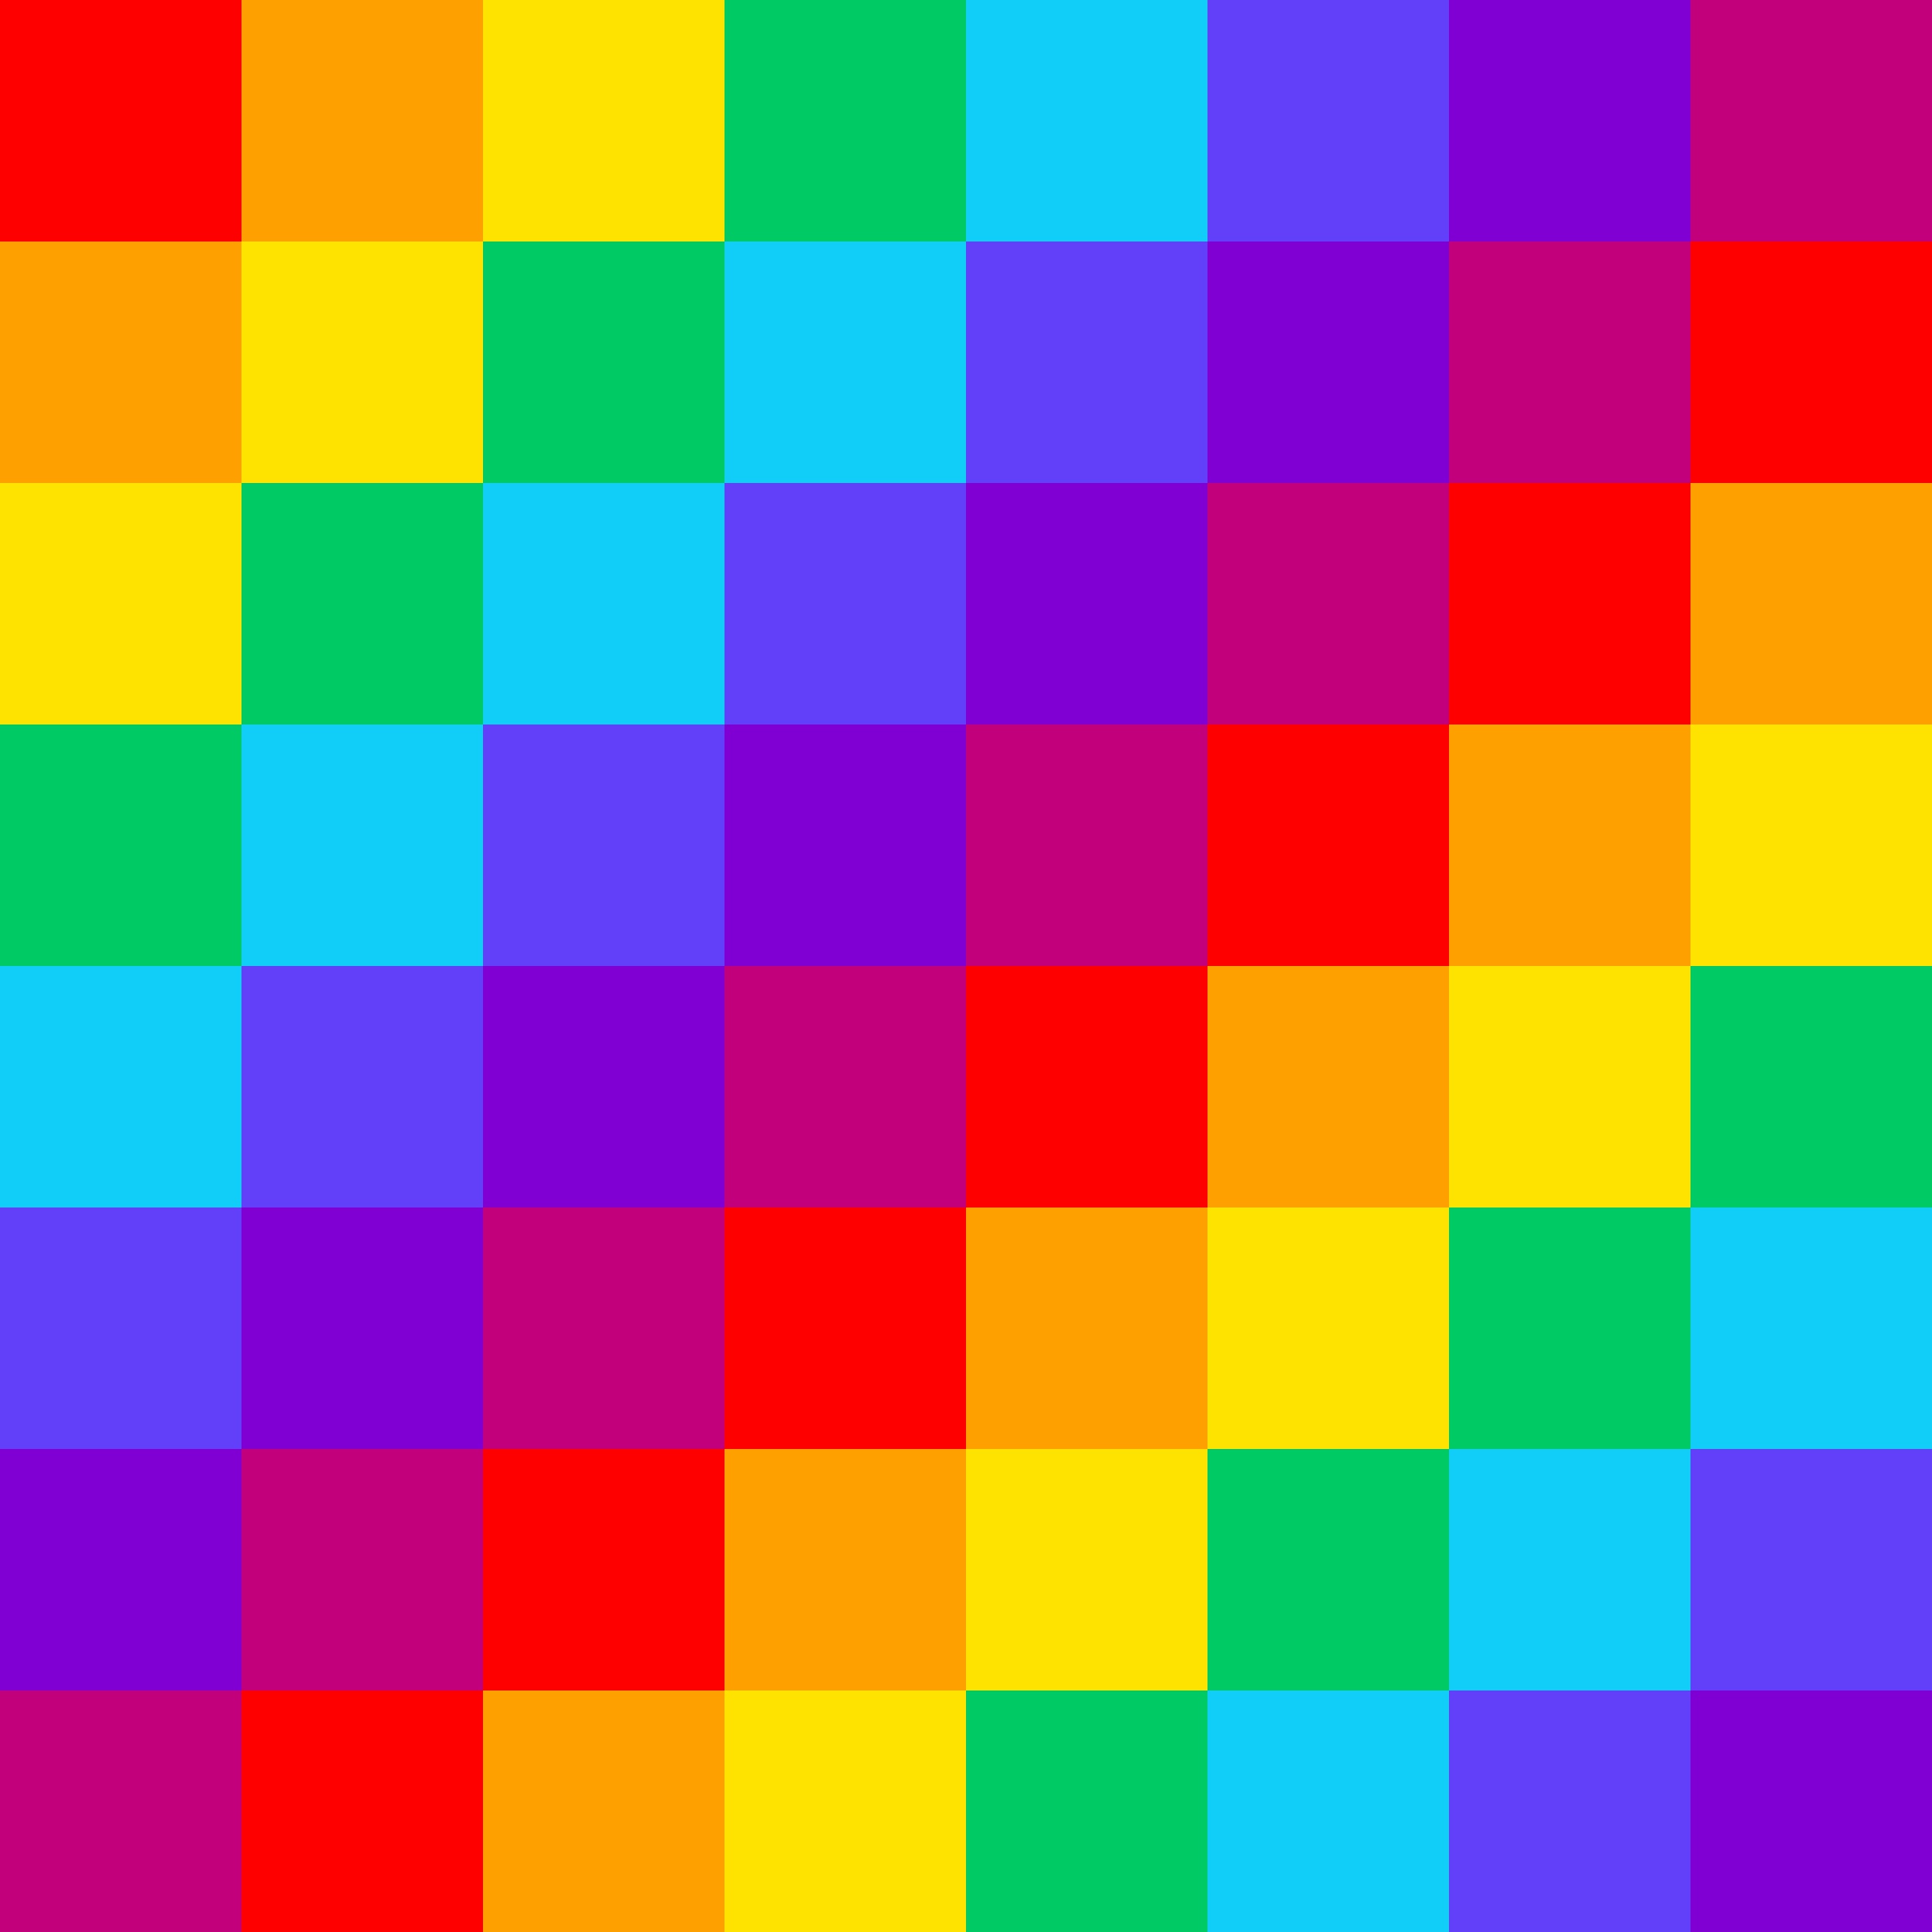 Маленький цветные квадратики. Цветные квадраты. Разноцветные квадратики. Разноцветные квадрики. Радужные квадратики.